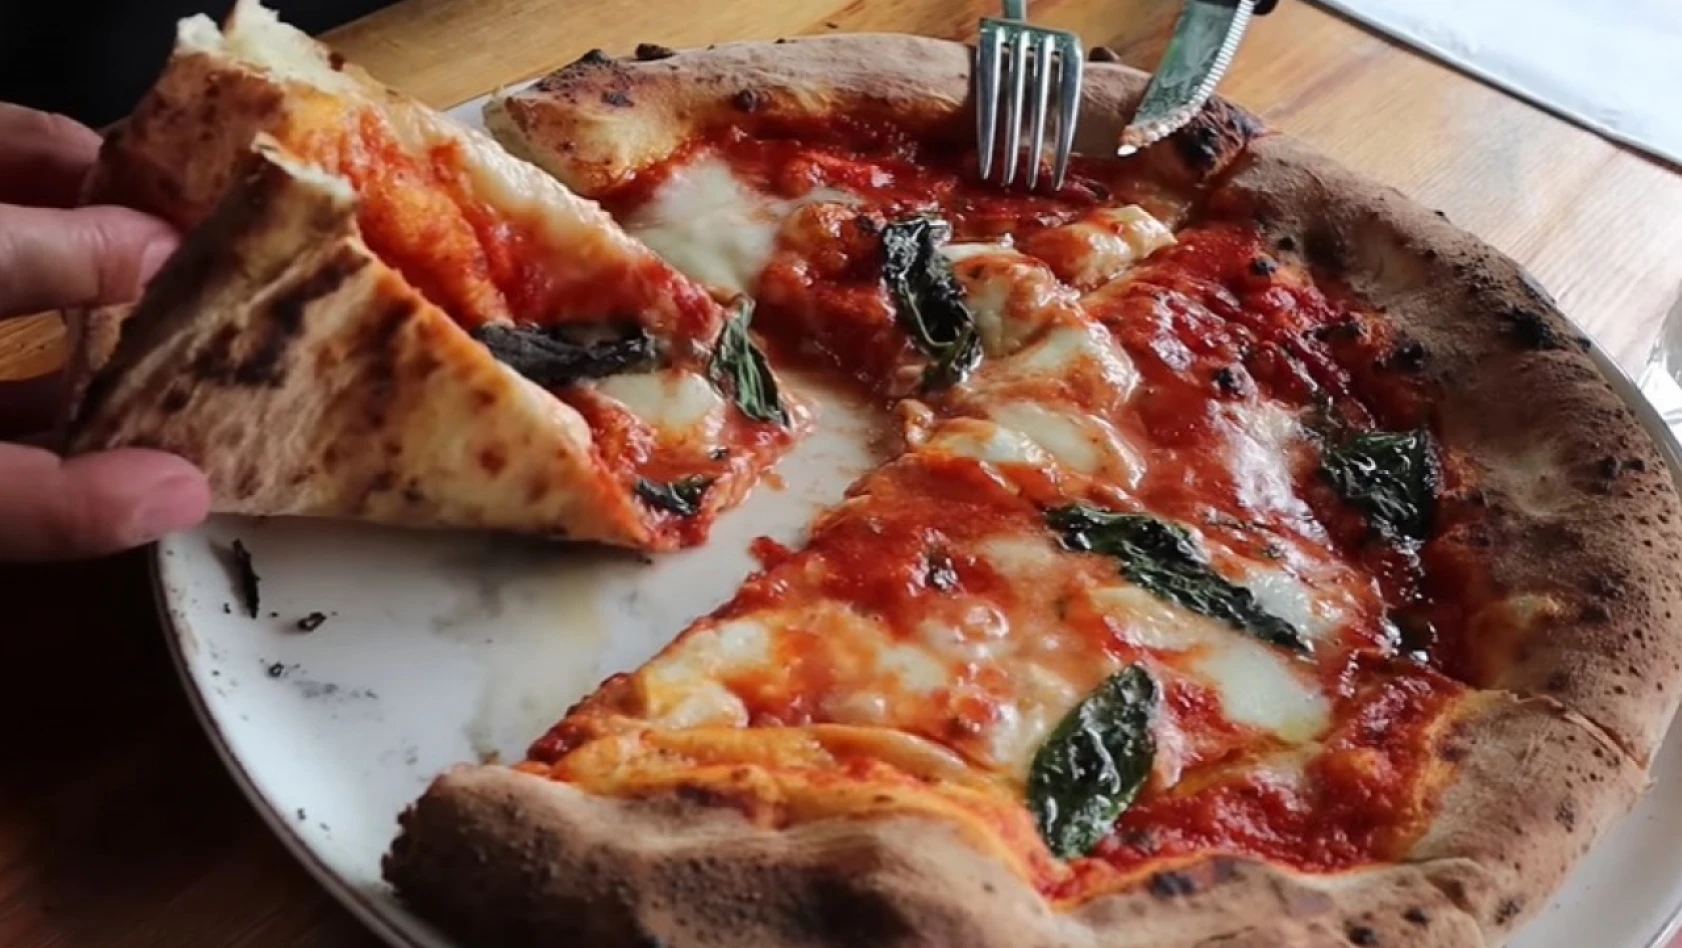 İtalyanlar, pizzanın faydalarını araştırdı - Hangi hastalığa iyi geliyor?